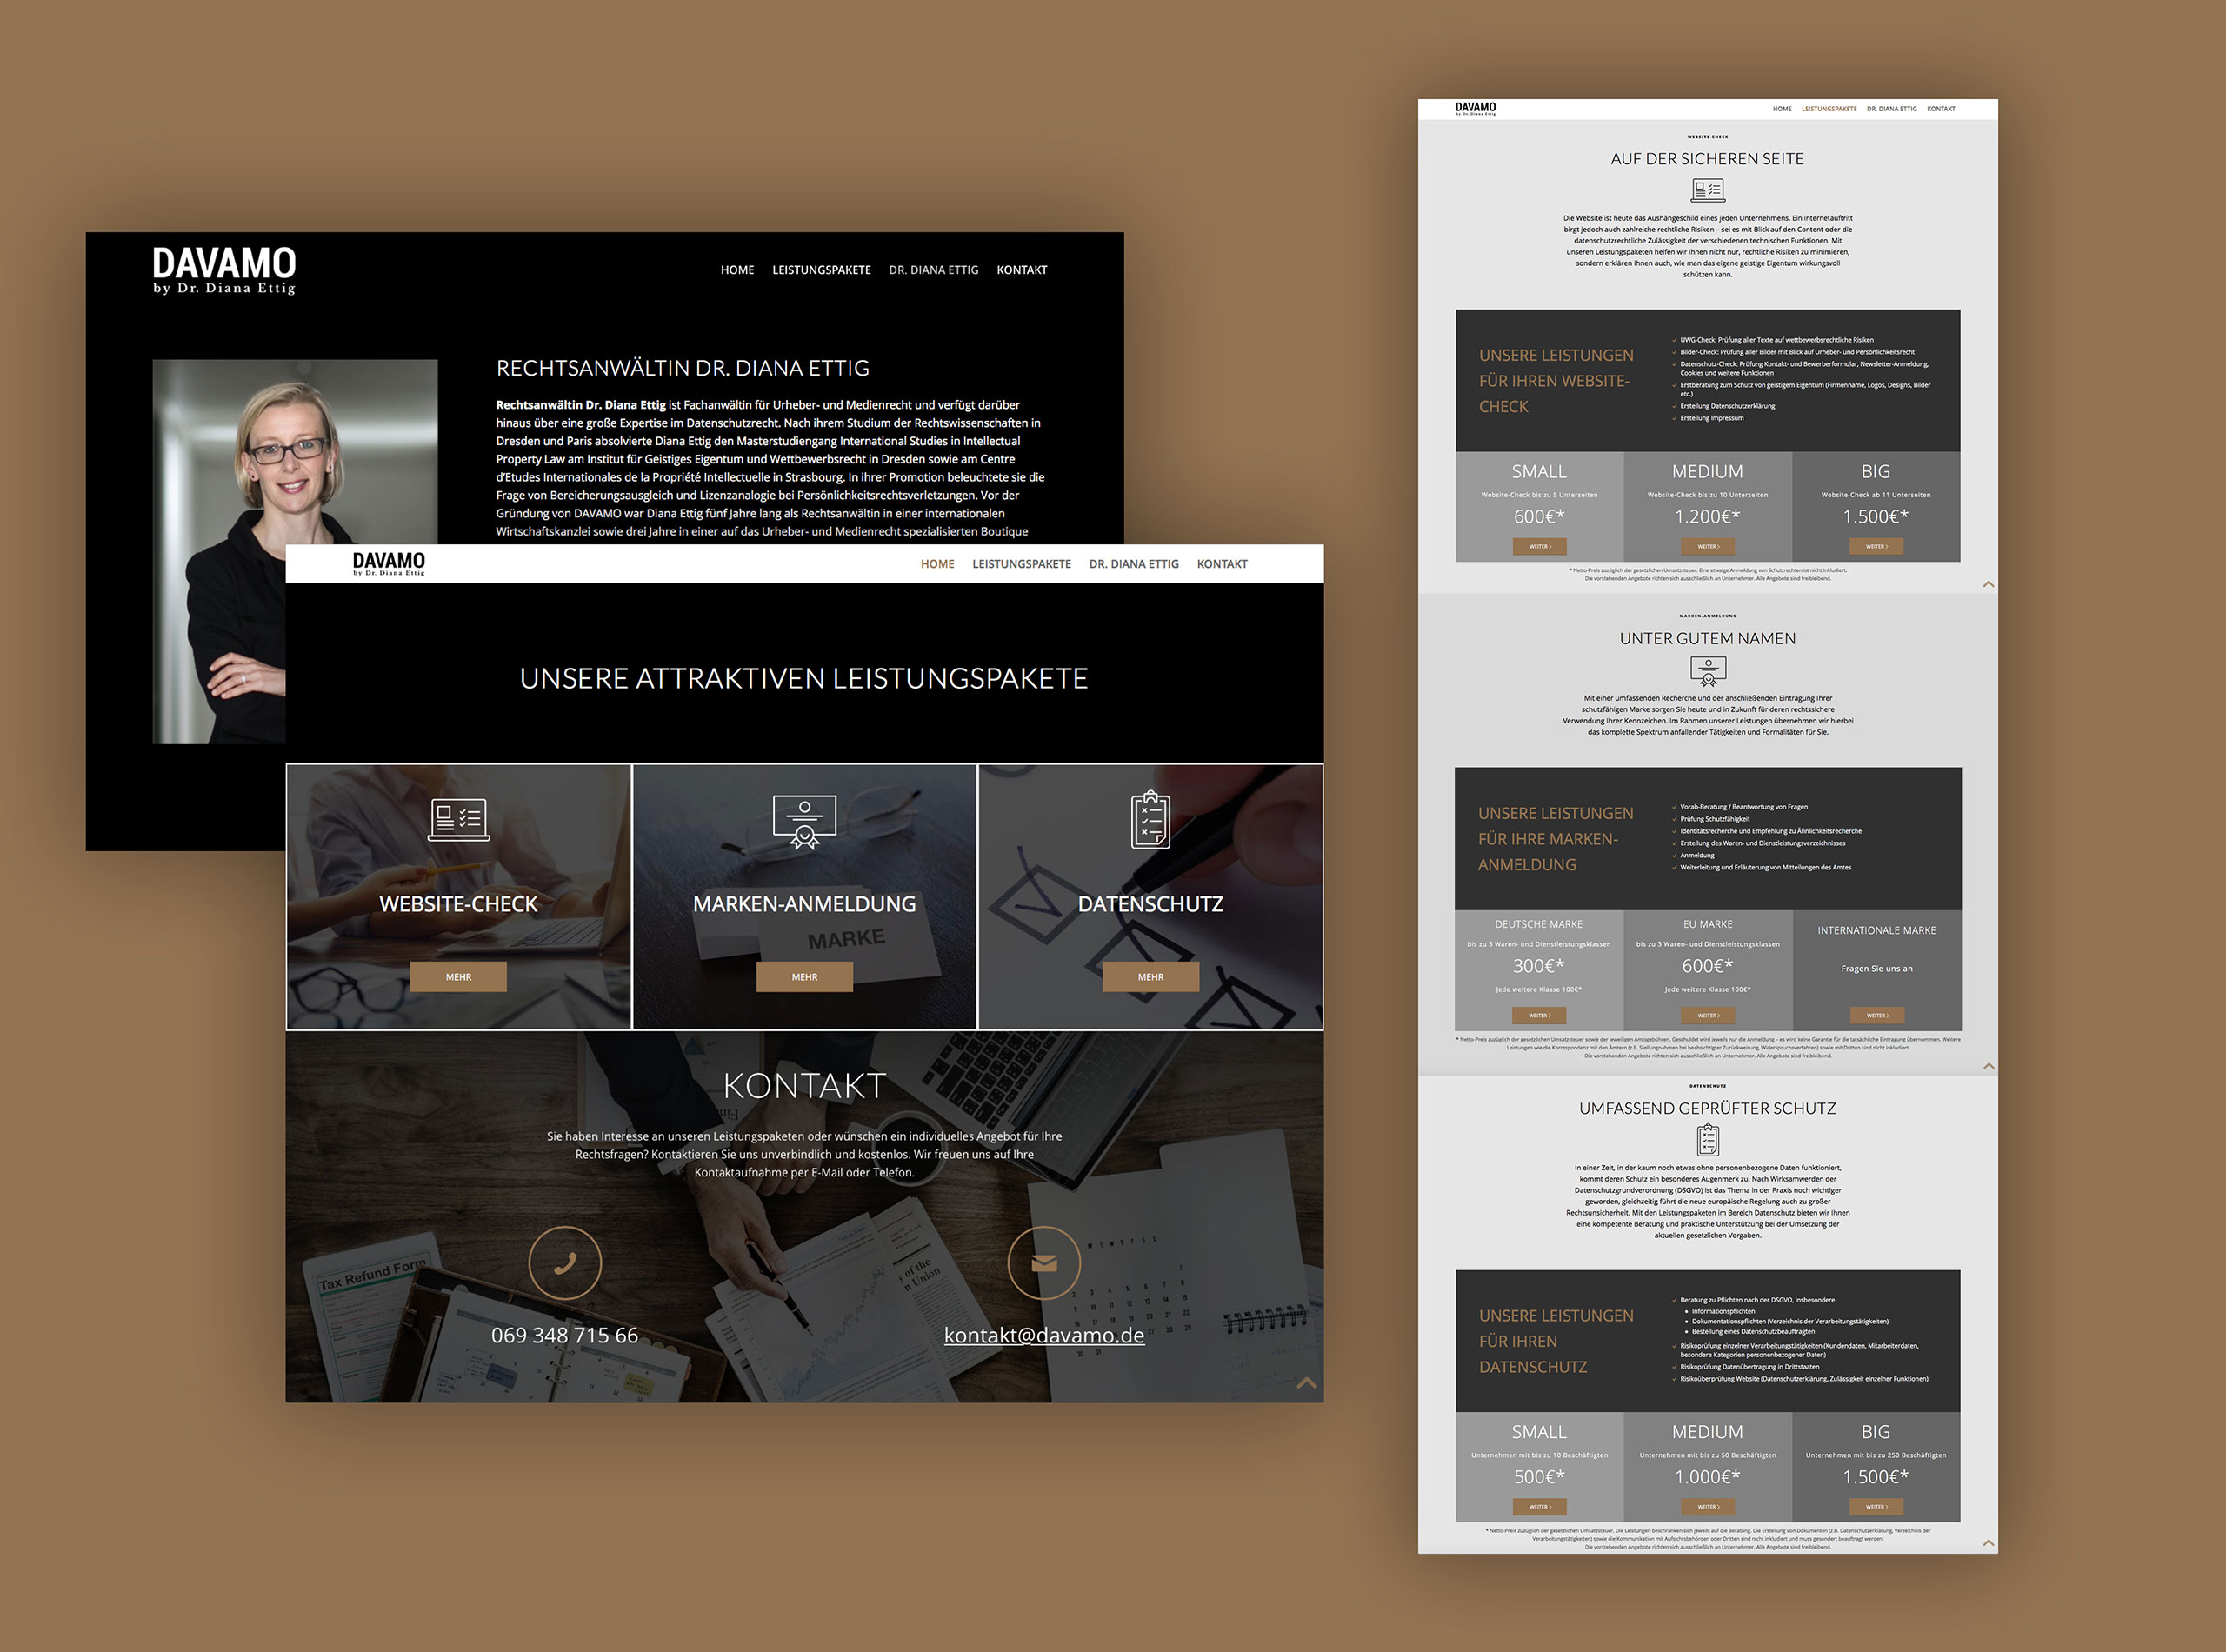 Rechtsanwalt Homepage, responsive Webdesign in Wordpress